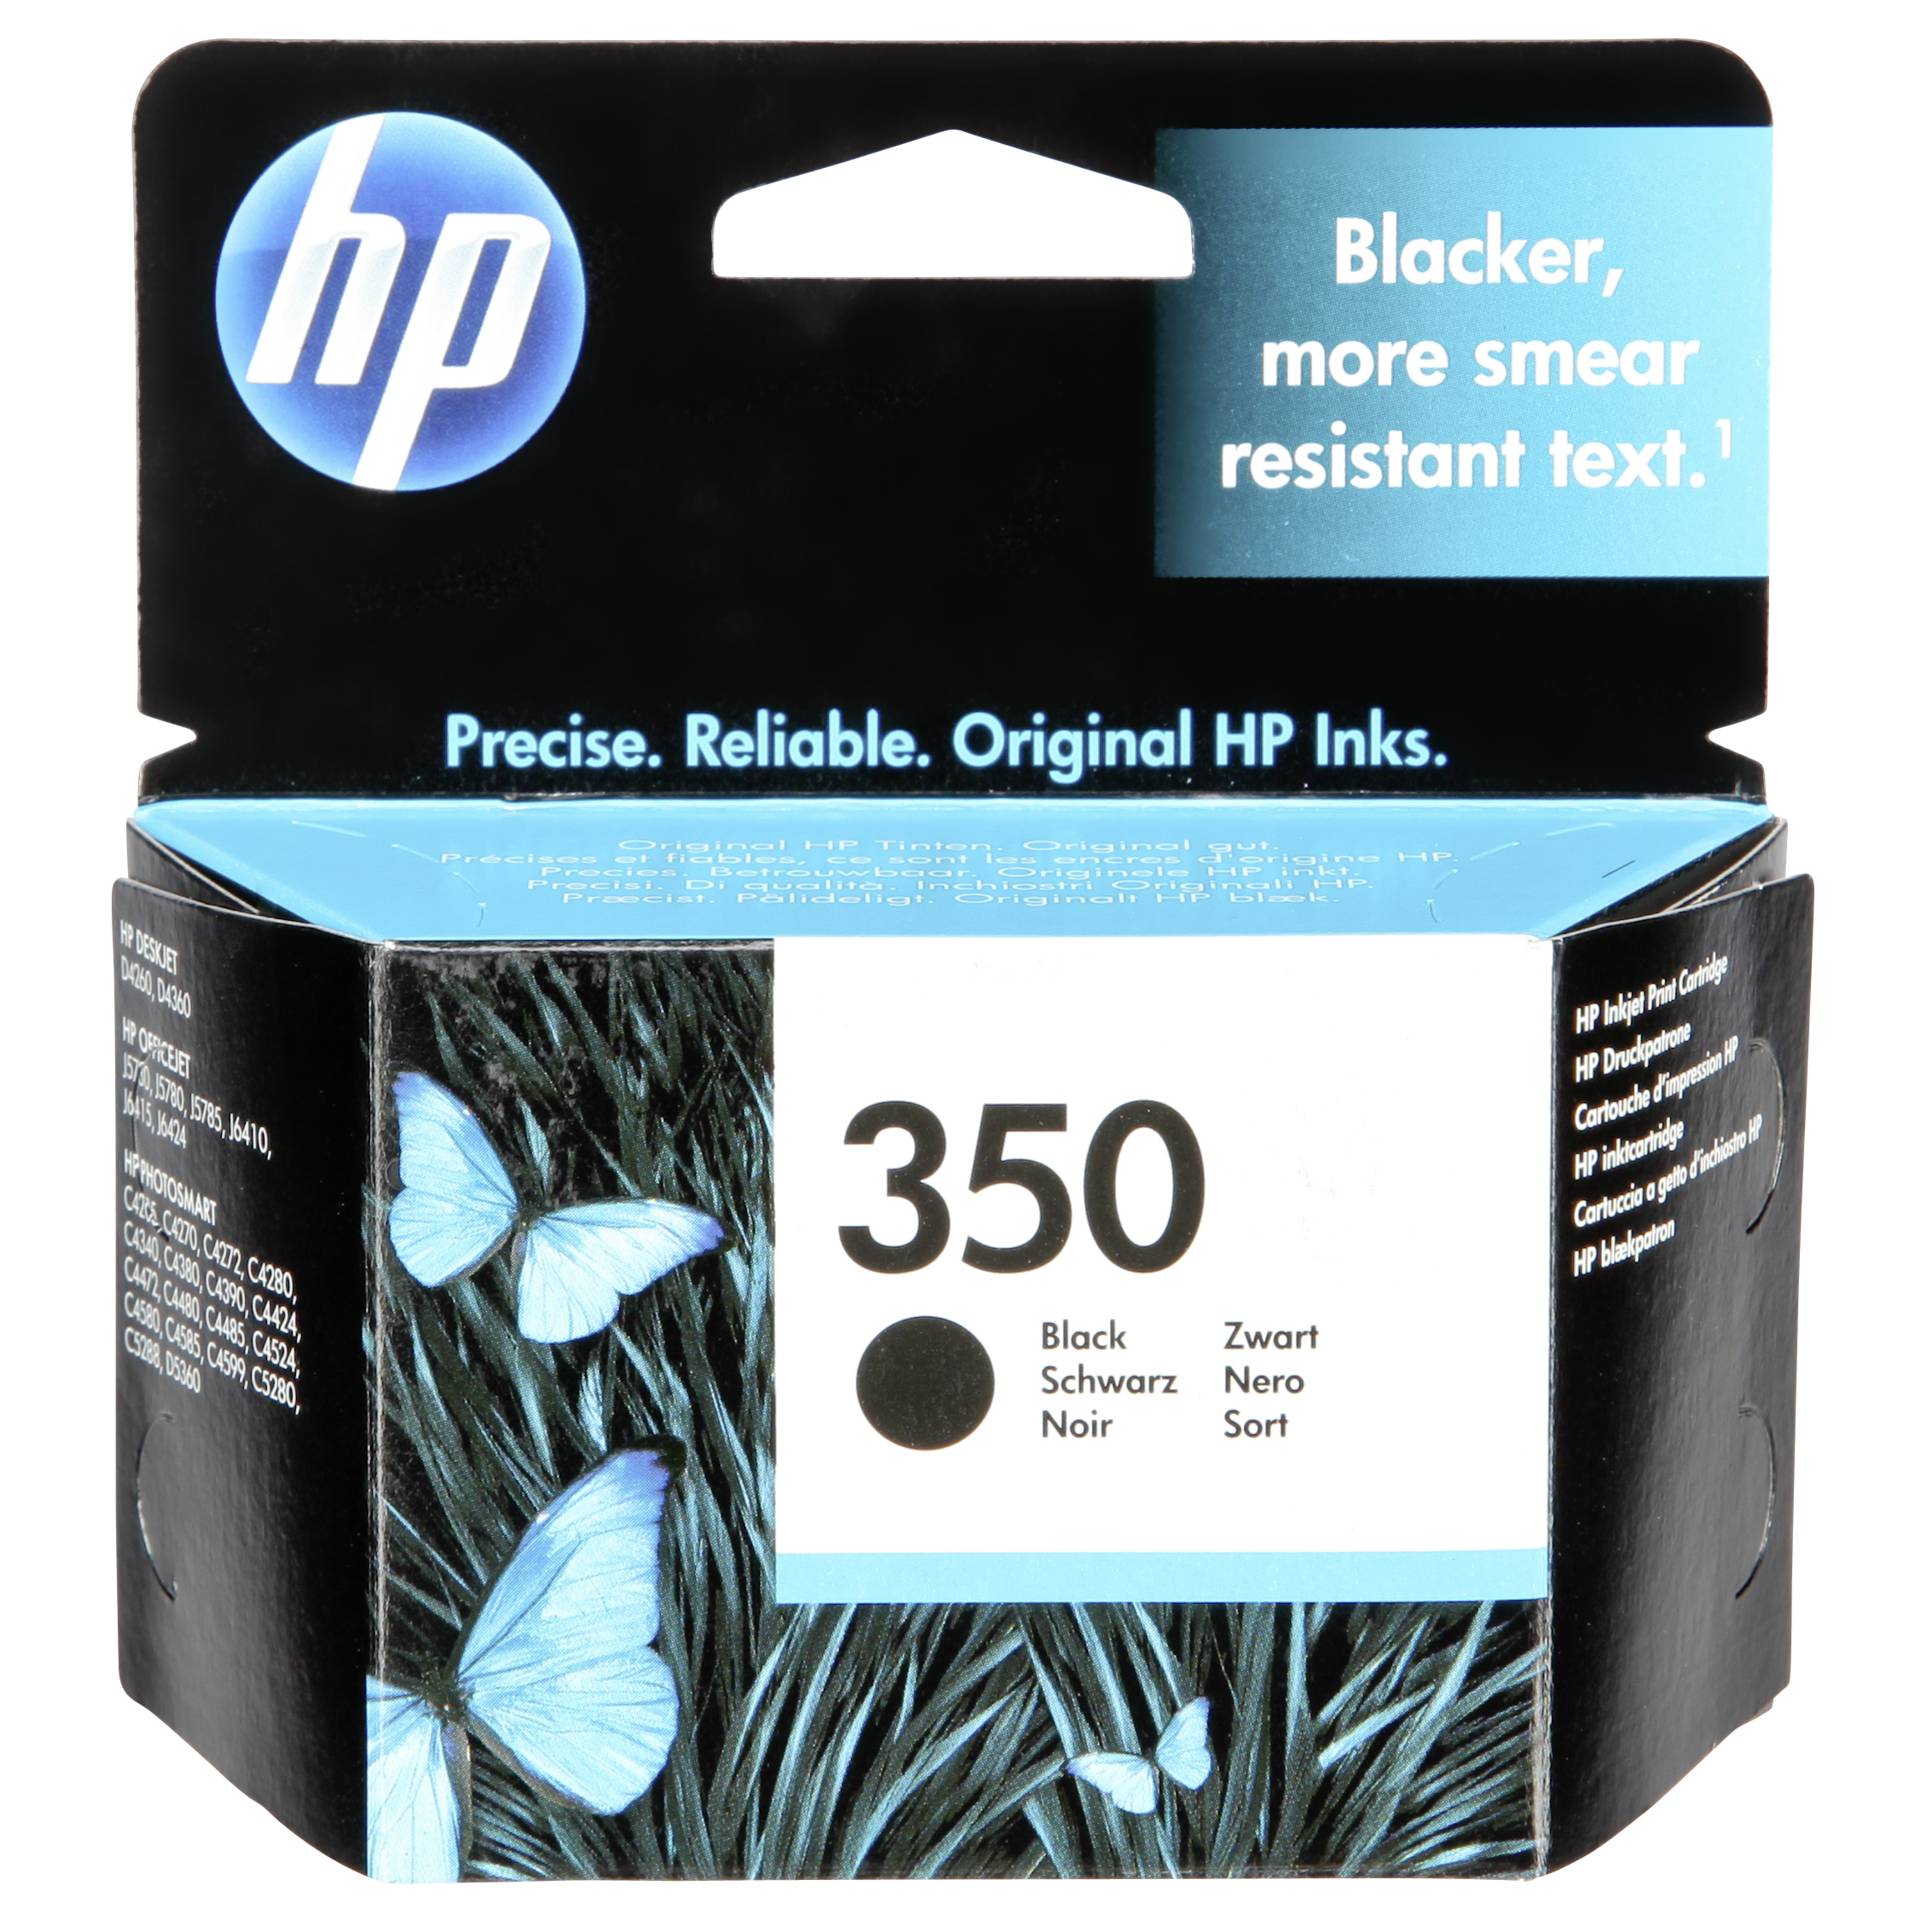 HP Druckkopf mit Tinte Nr 350 schwarz 